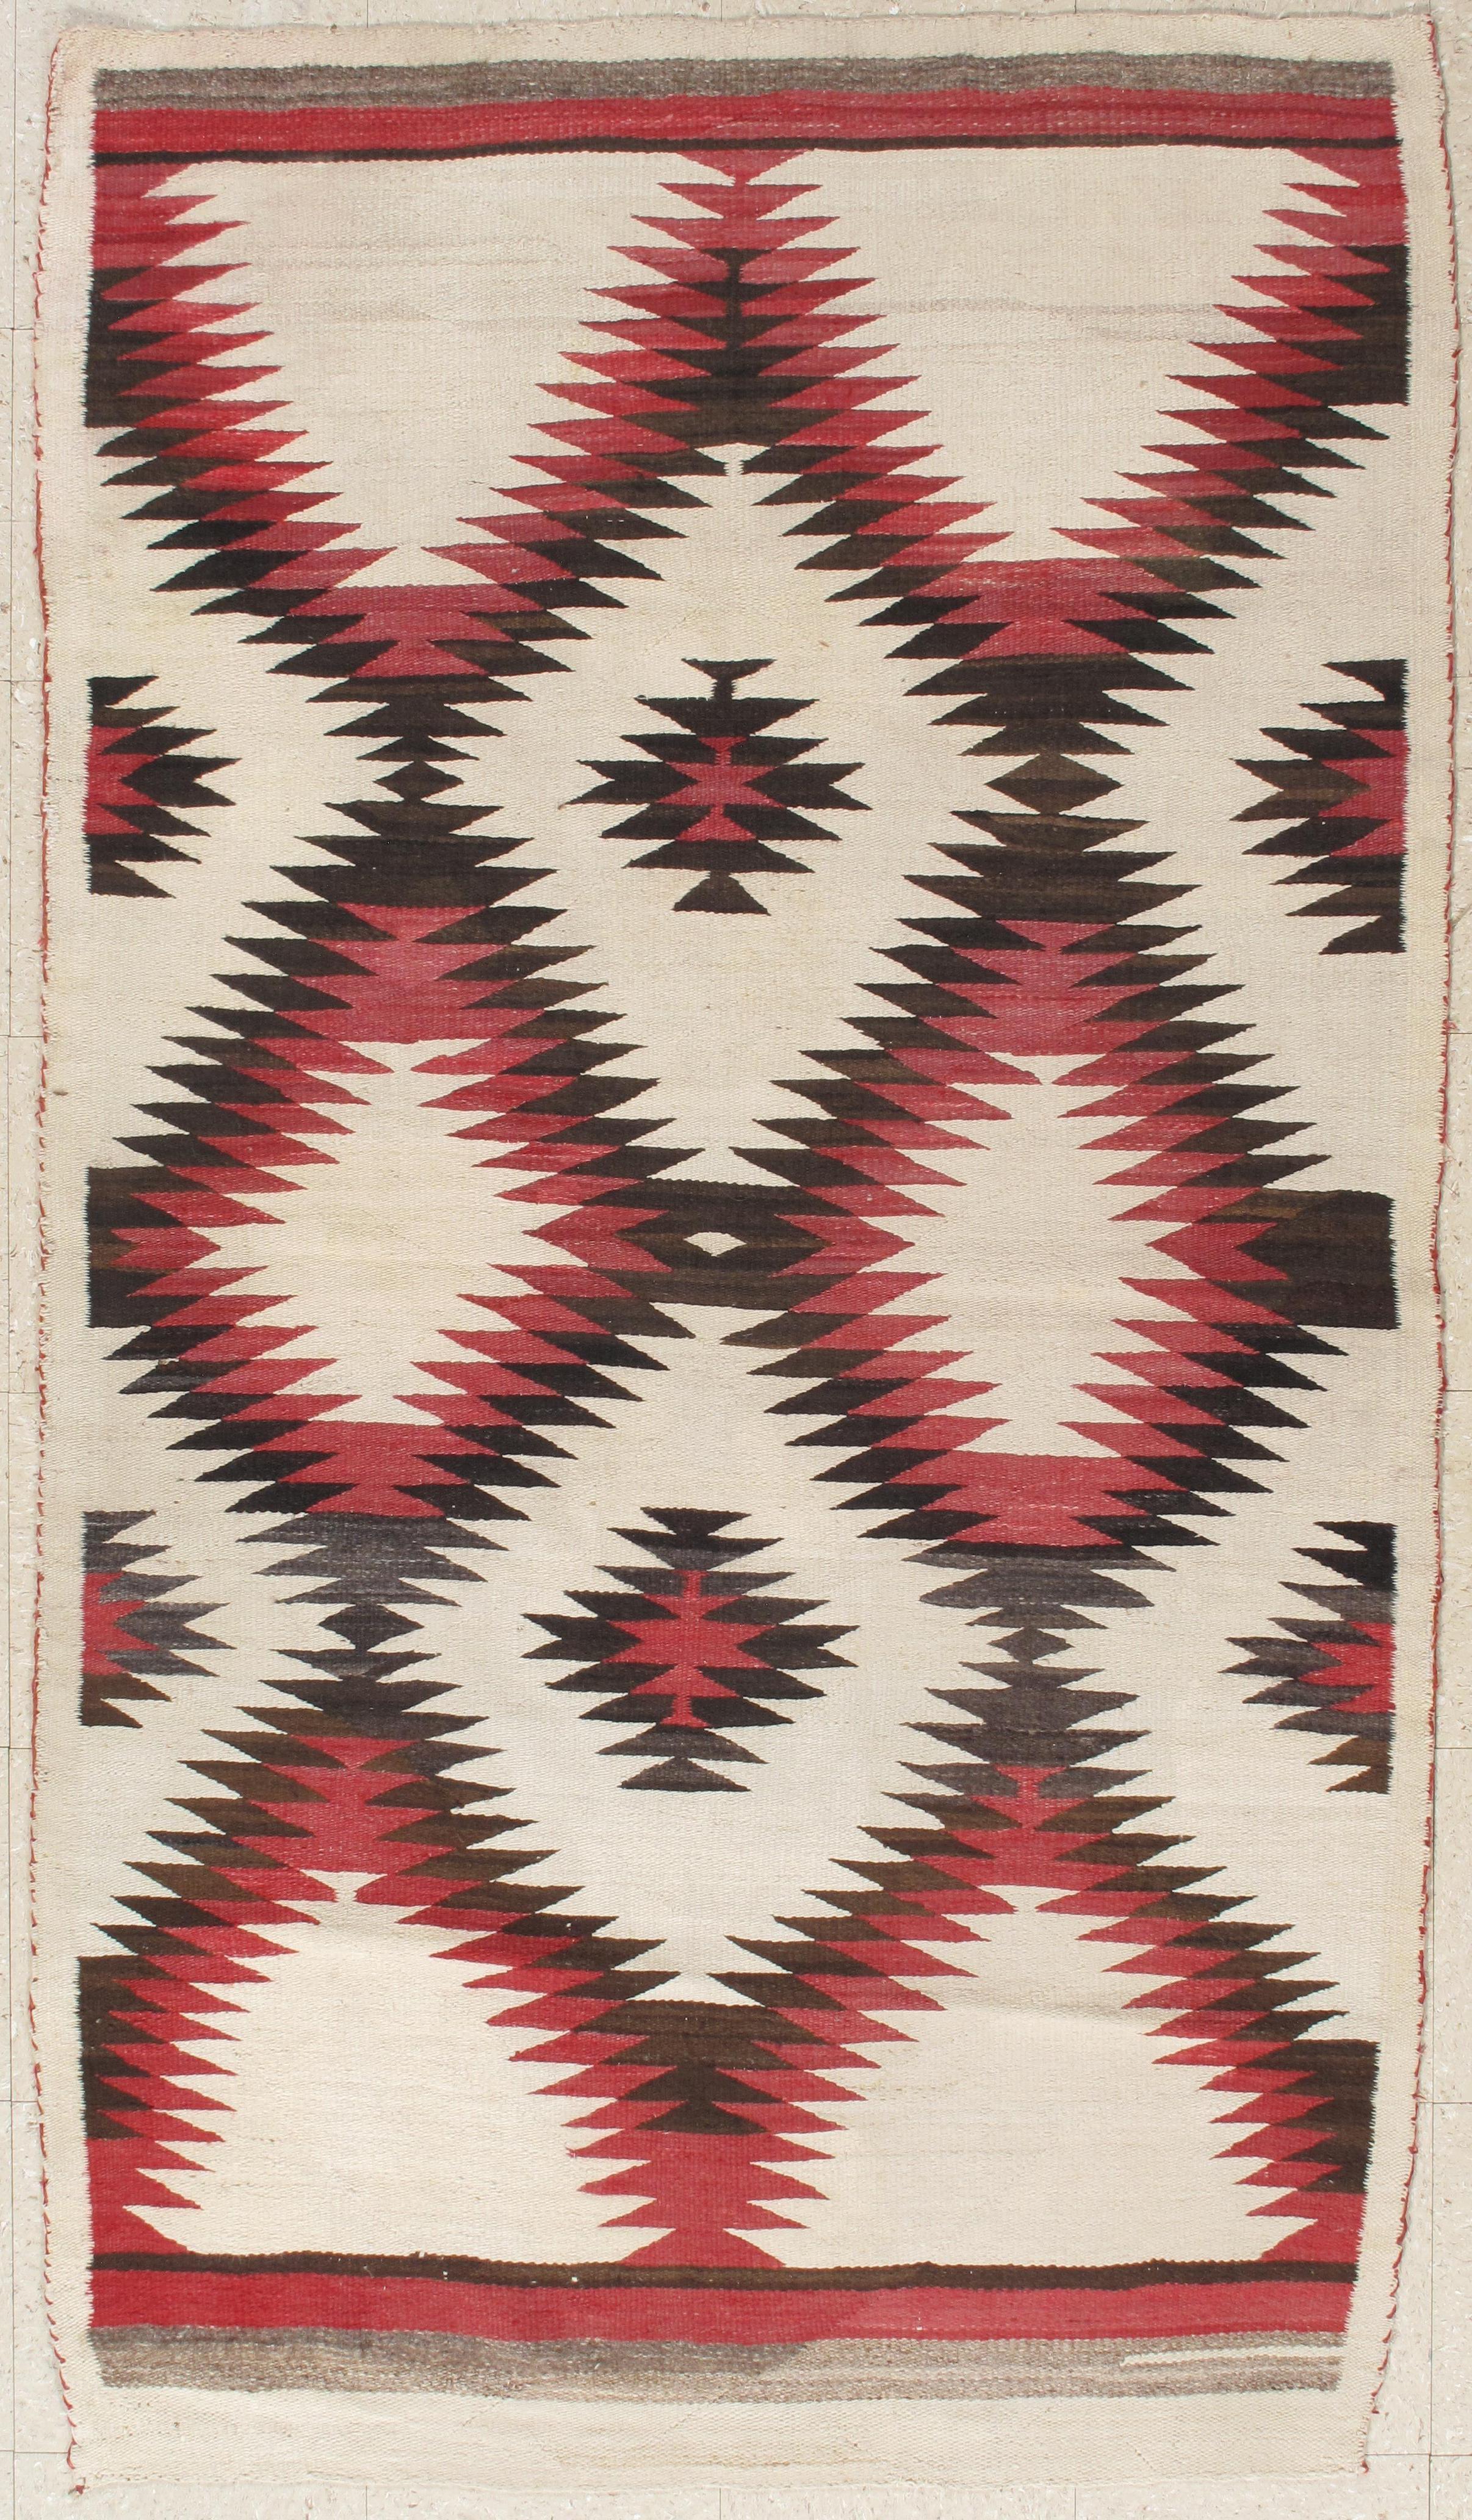 American Antique Navajo Carpet, Folk Rug, Handmade Wool, Red, Black, Ivory, Brown